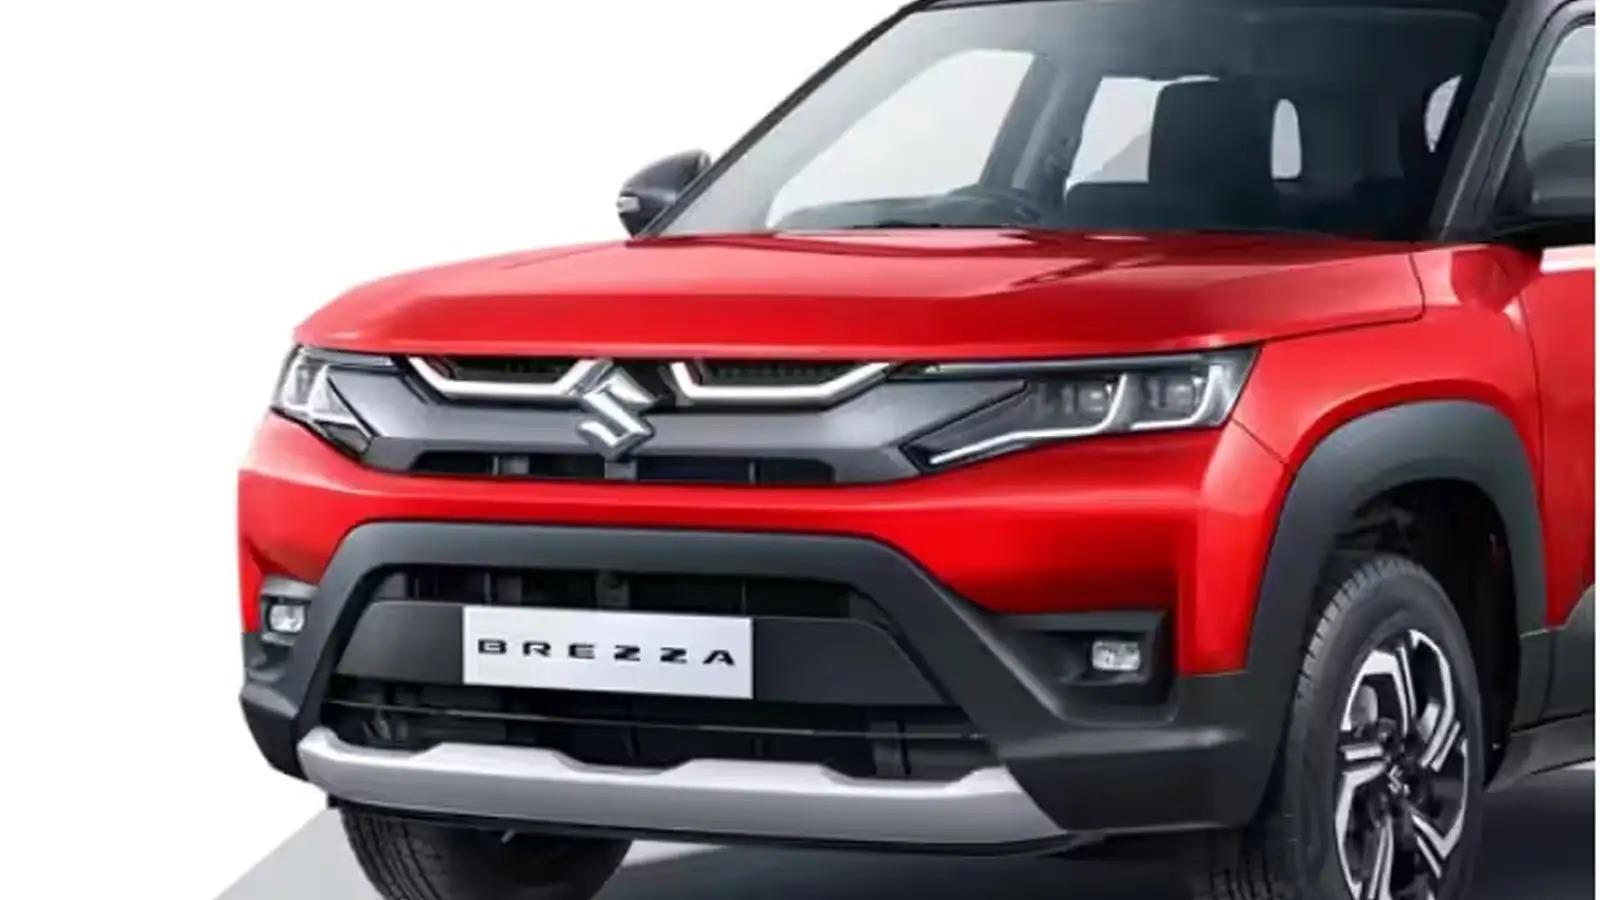 अगस्त में SUV सेगमेंट का बेस्ट मॉडल बनकर सामने आई Maruti Suzuki Brezza, पिछले महीने की सबसे ज्यादा बिक्री 